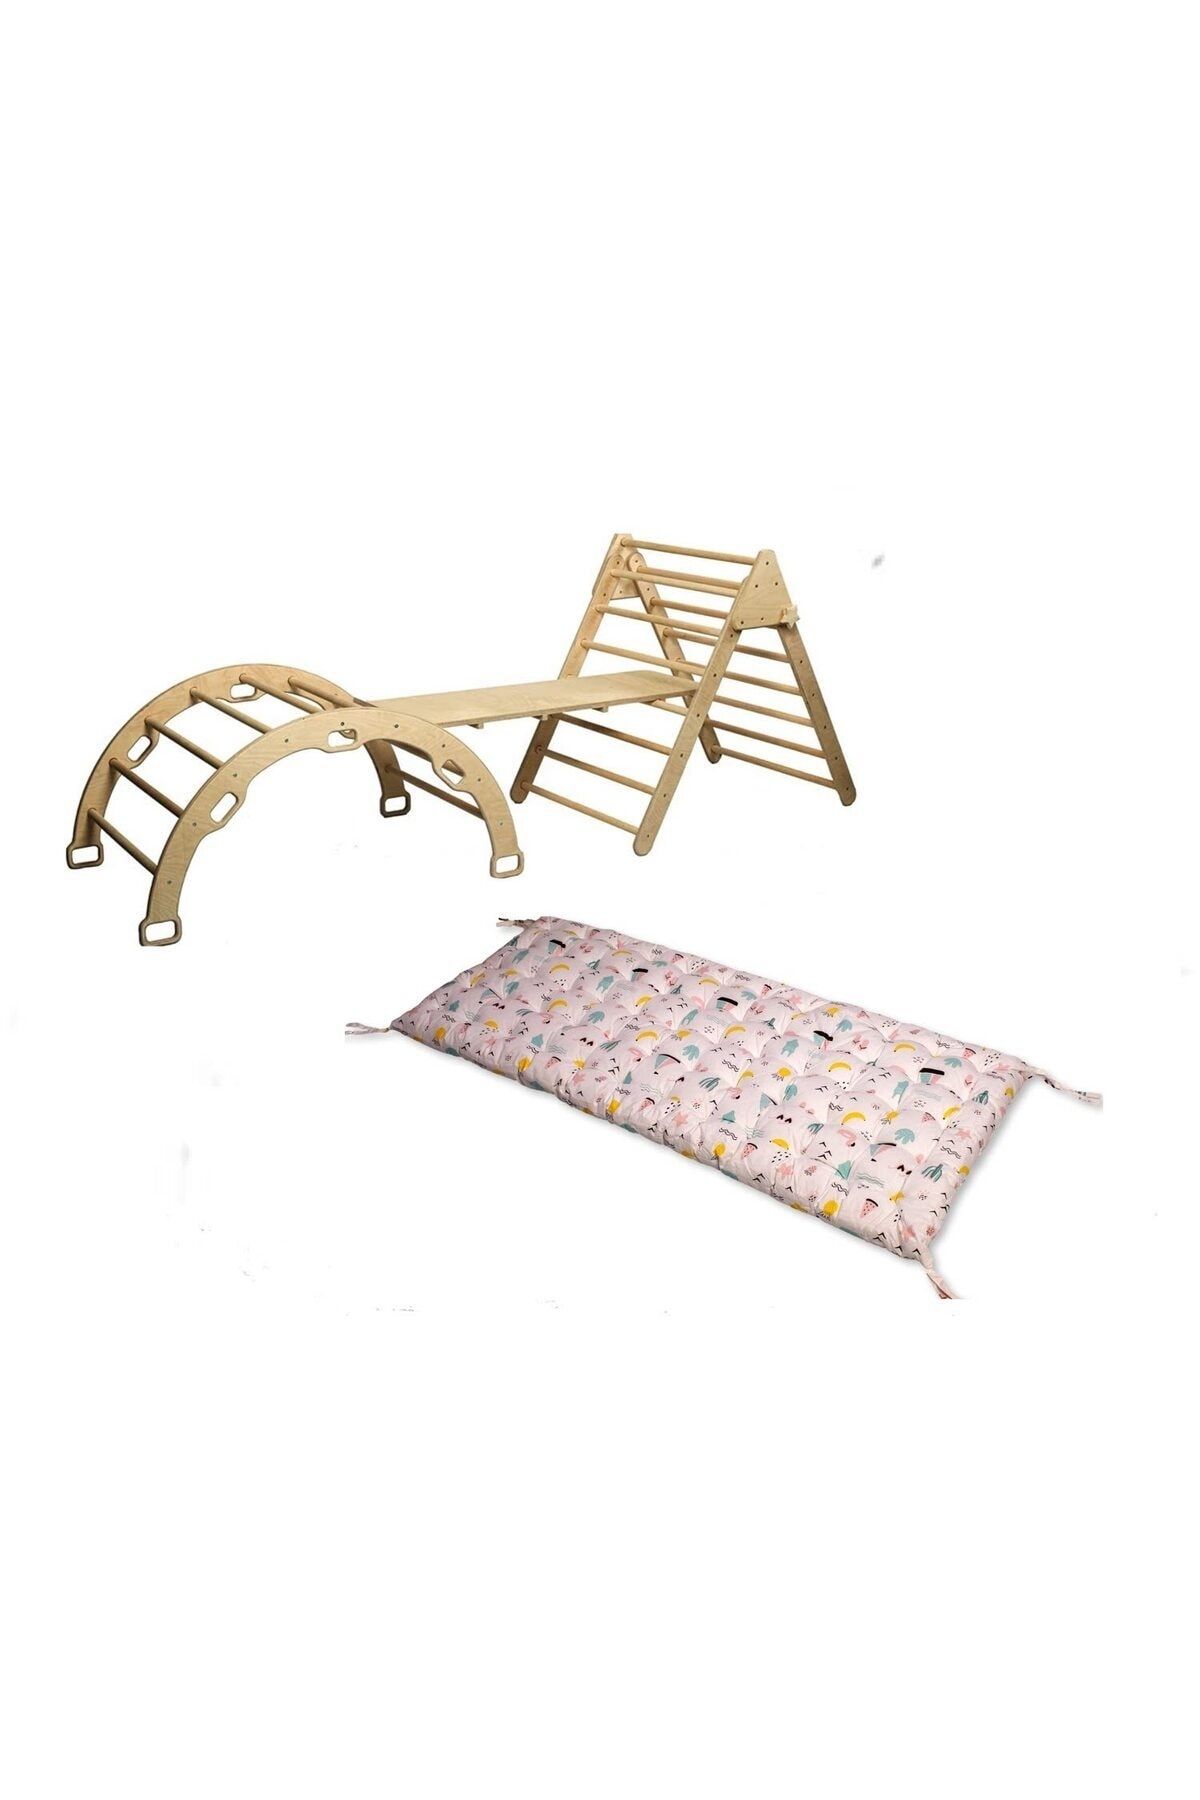 KIDOPPO Pikler Tırmanma Seti Ve Yastık | Montessori 3'lü Set | kemer Üçgen Merdiven Rampa Flamingo Yastık